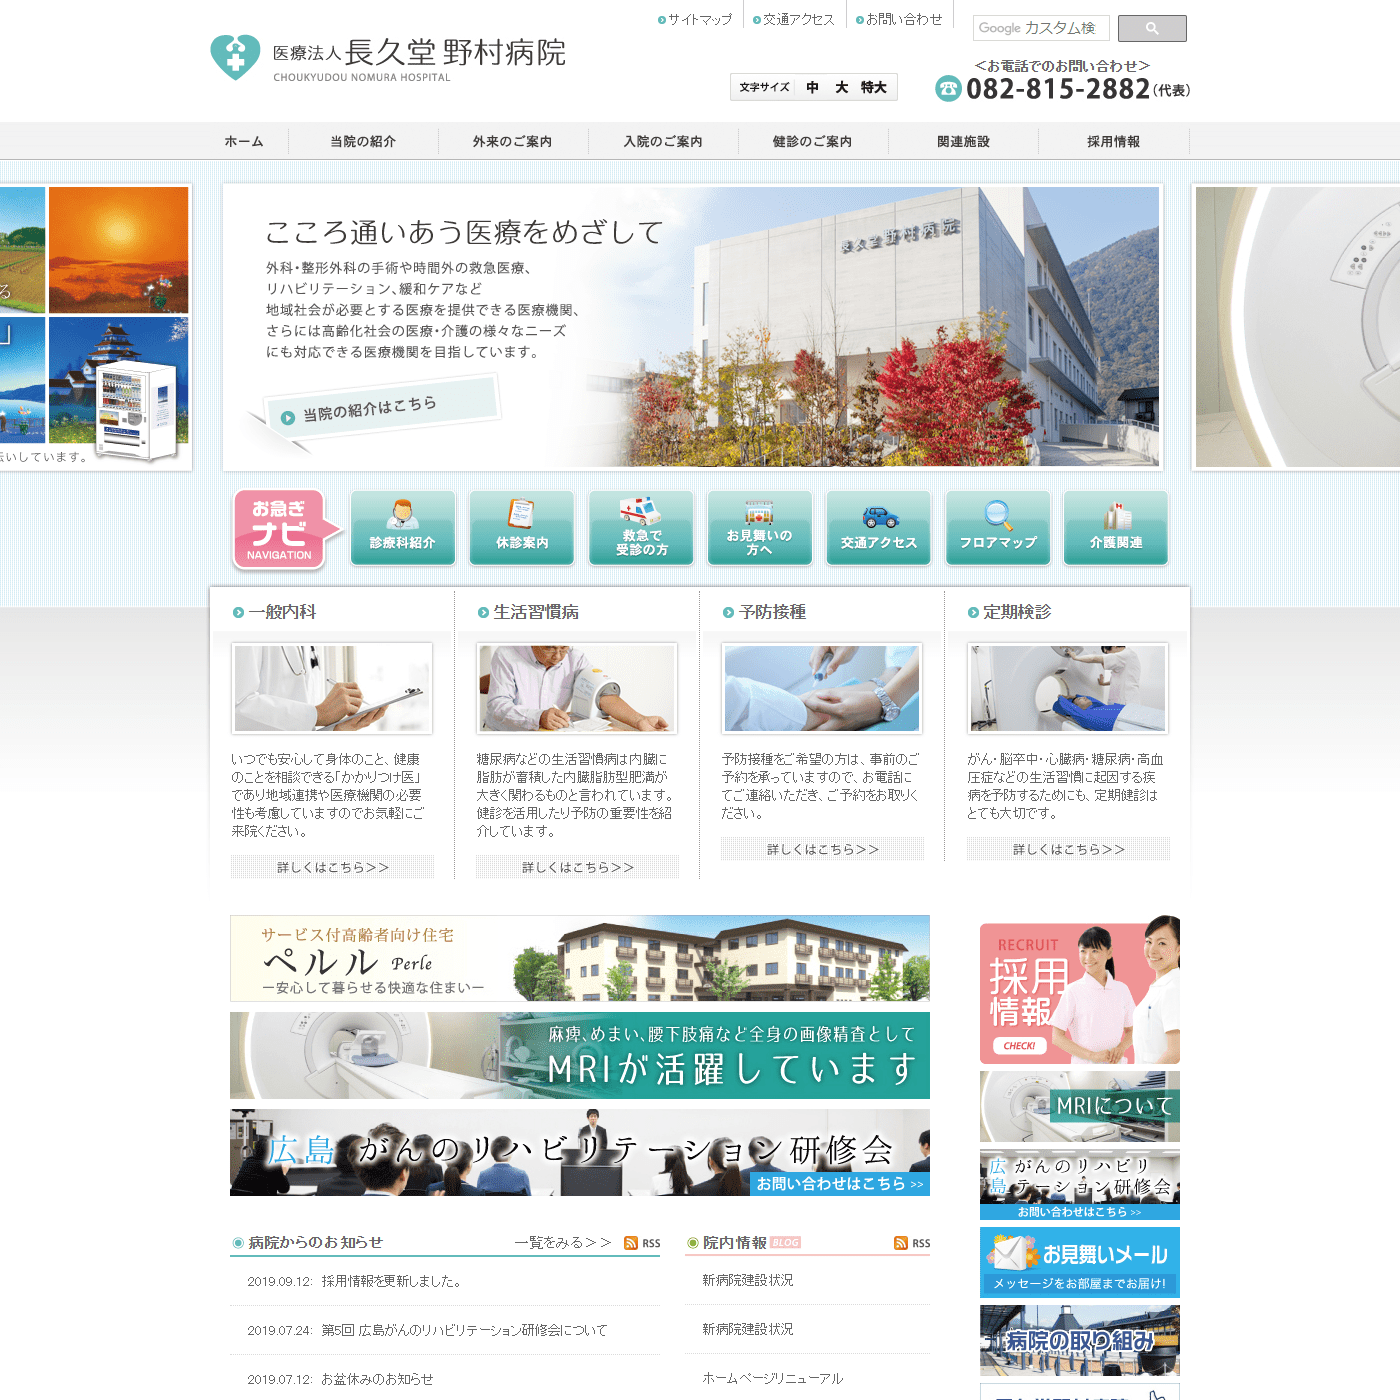 長久堂 野村病院 WEBサイト